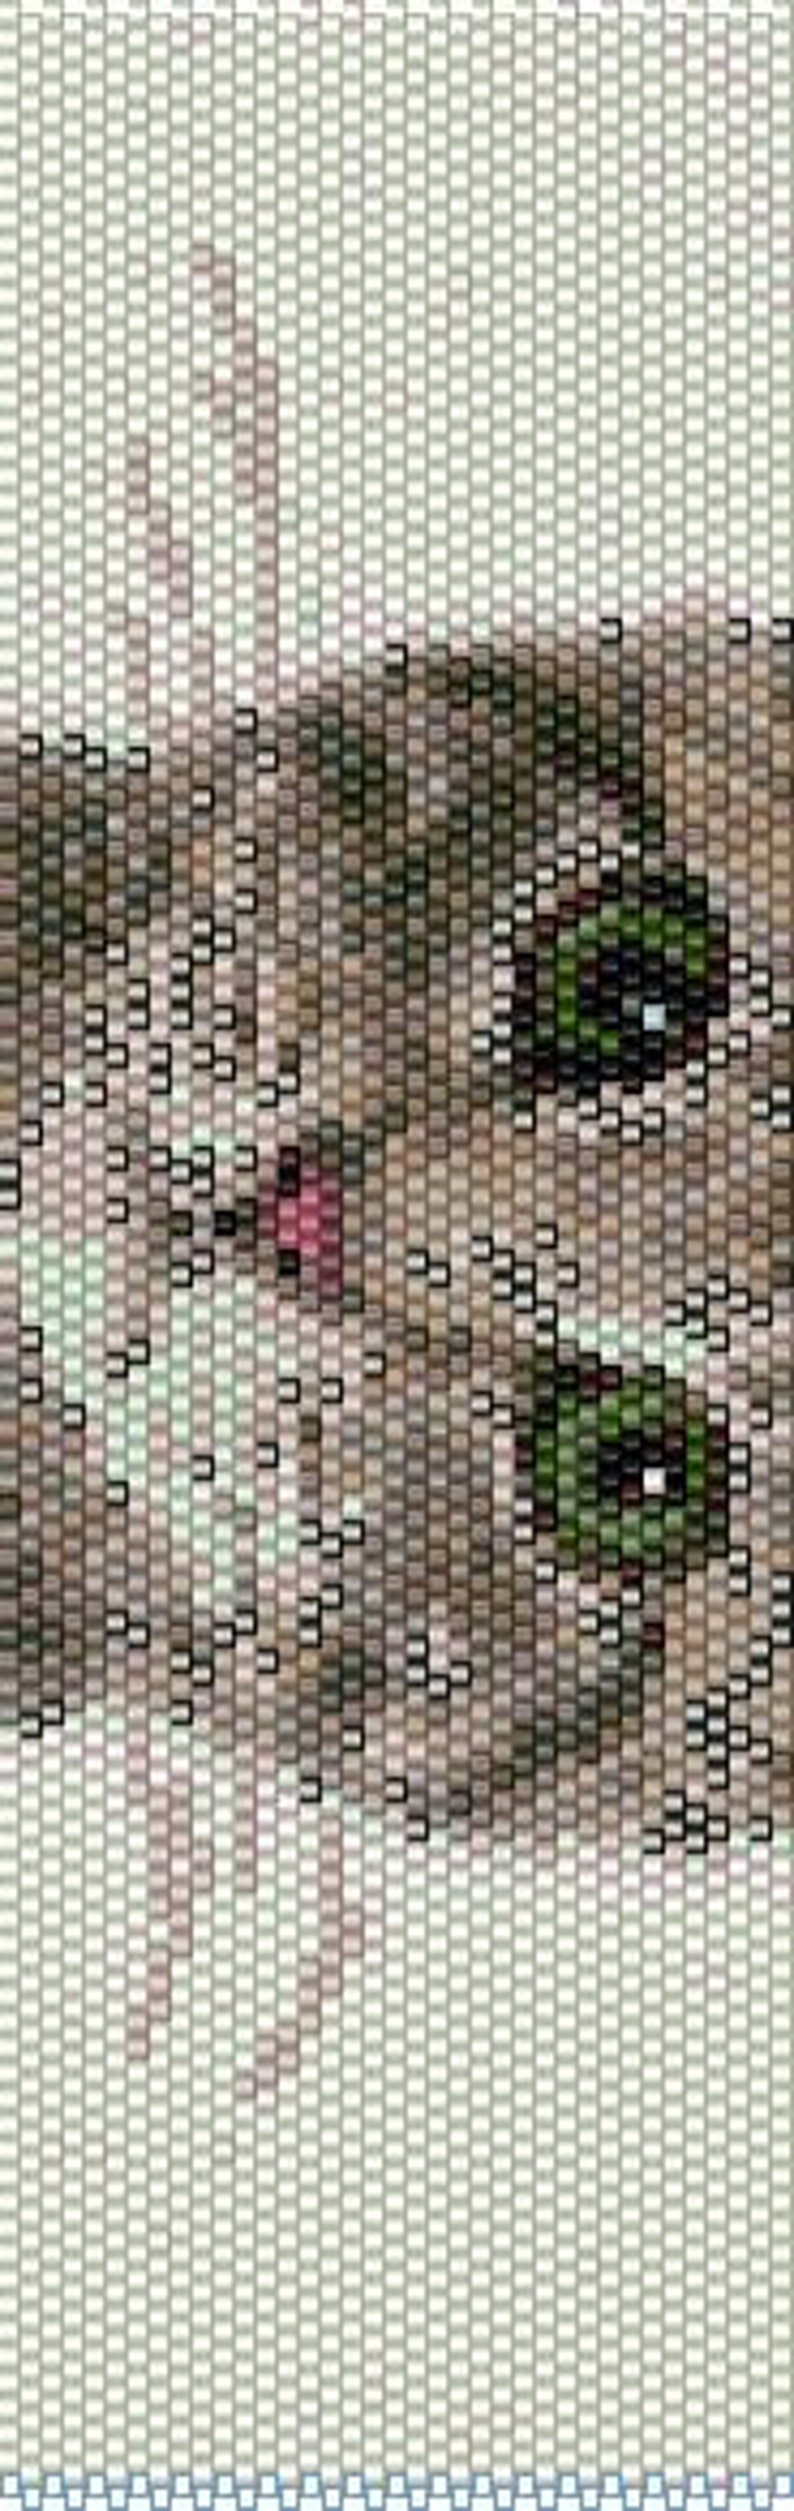 BKI0001 Kitten 1 Odd Count Single Drop Peyote Cuff/Bracelet Pattern image 2